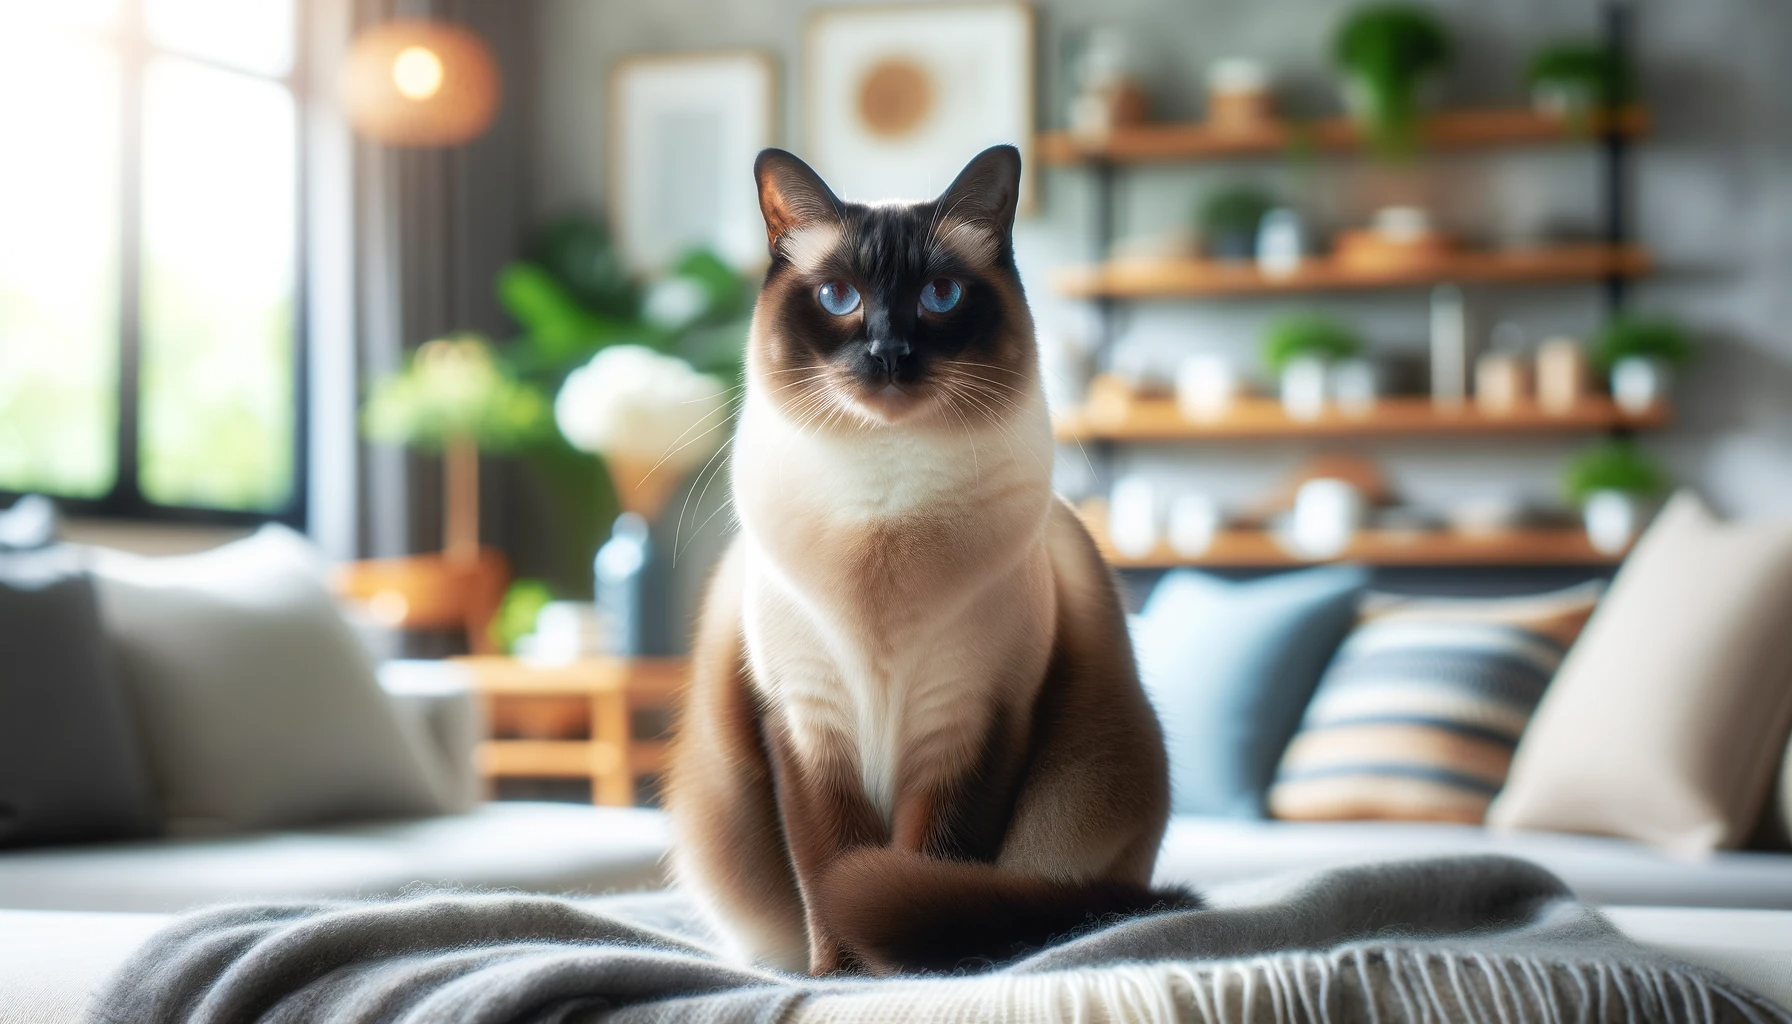 Un elegante gatto siamese con il suo mantello caratteristico e gli occhi azzurri seduto in un ambiente domestico accogliente, ideale per chi cerca esemplari di gatti siamesi in vendita.